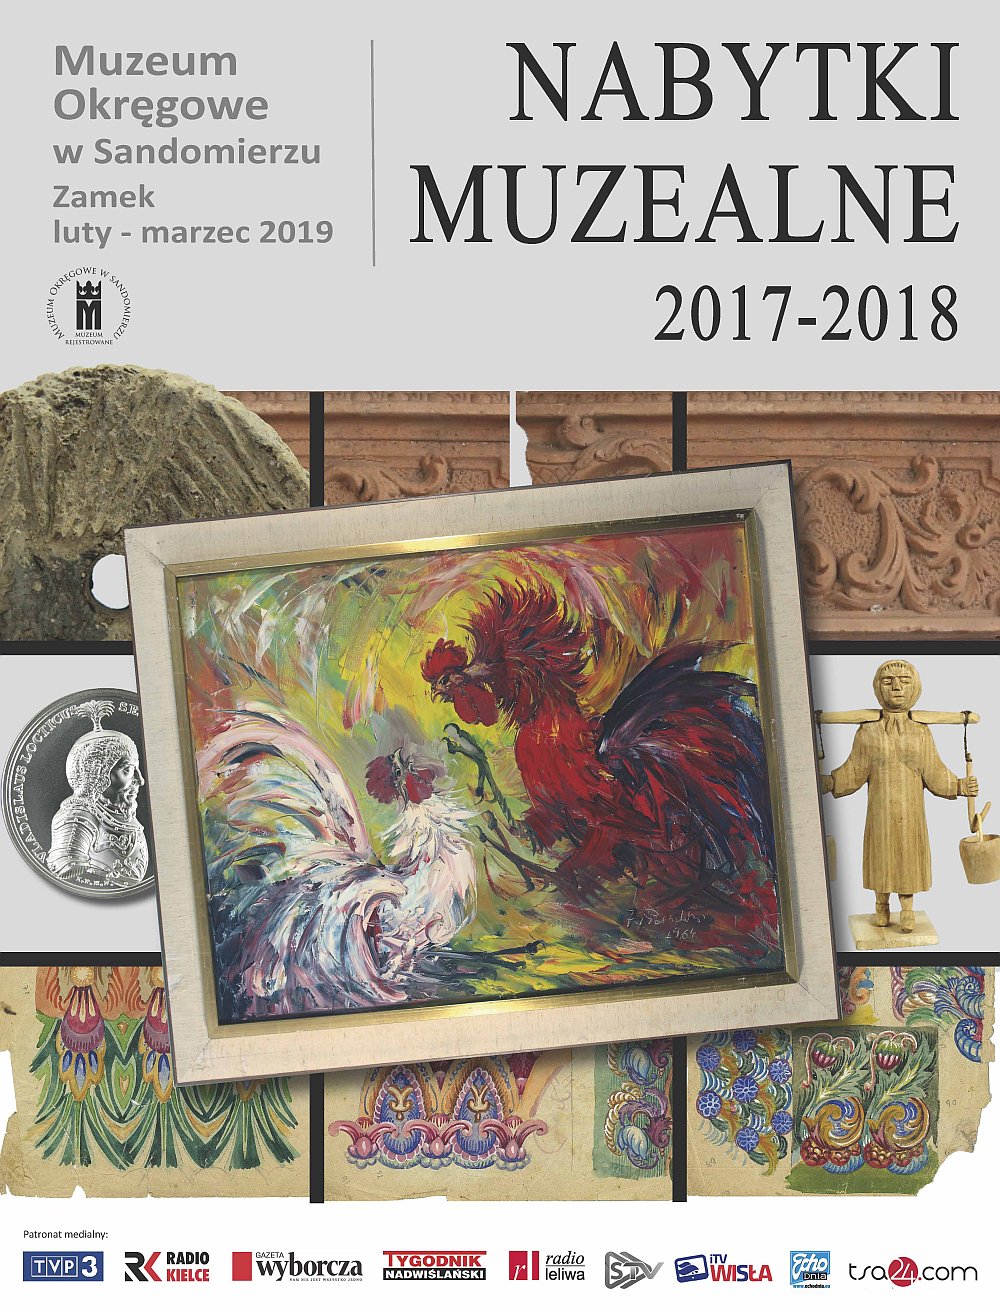 Nabytki muzealne 2017-2018